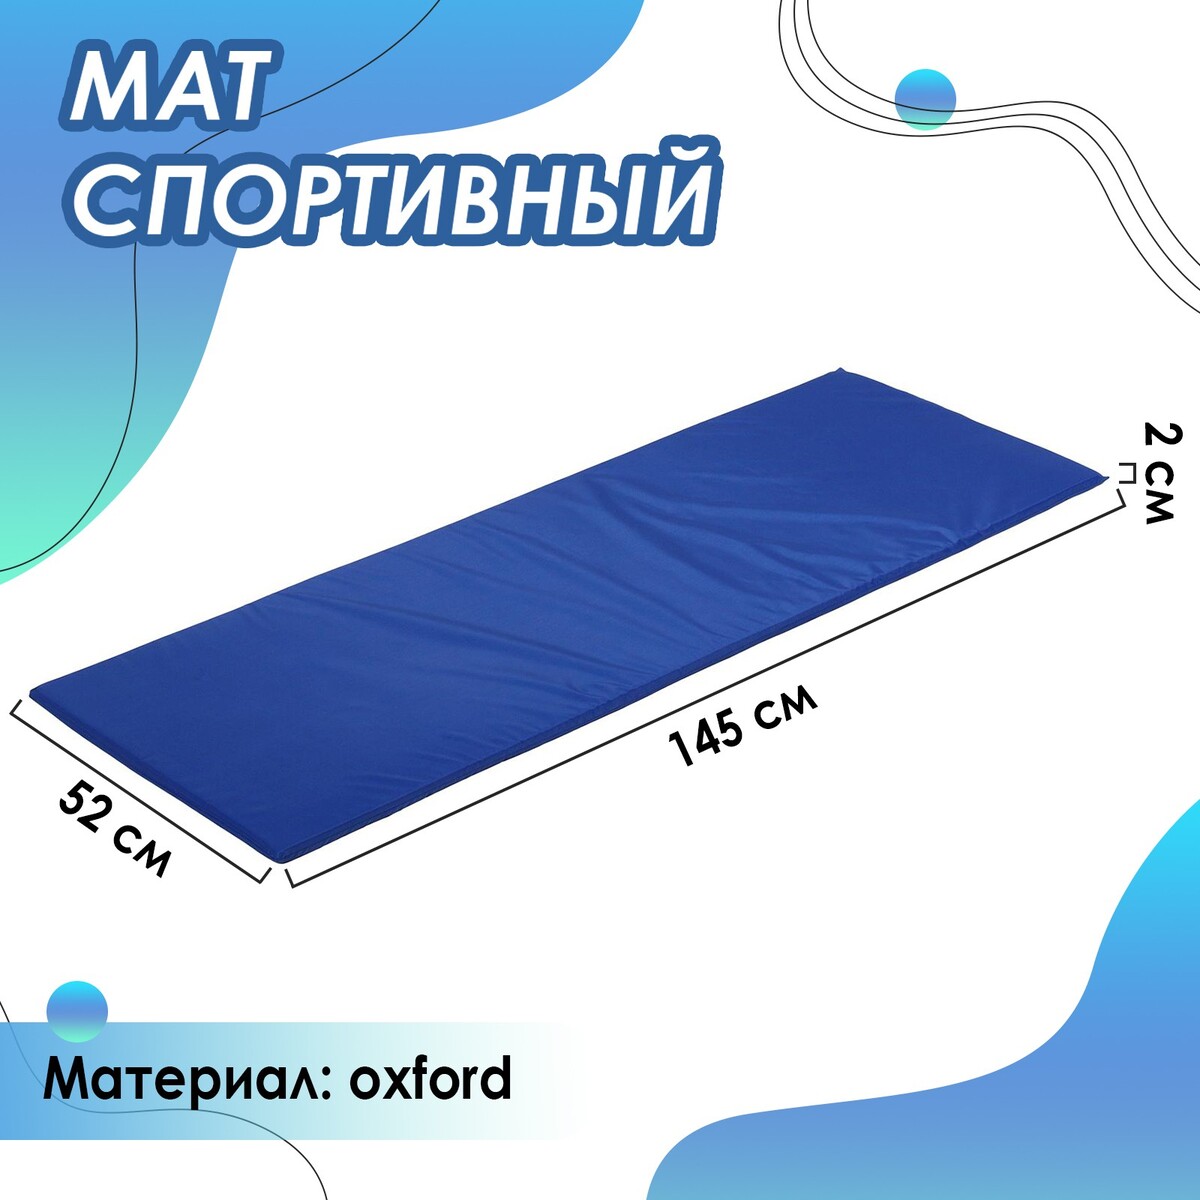 Мат мягкий onlytop, 145х52х2 см, цвет синий